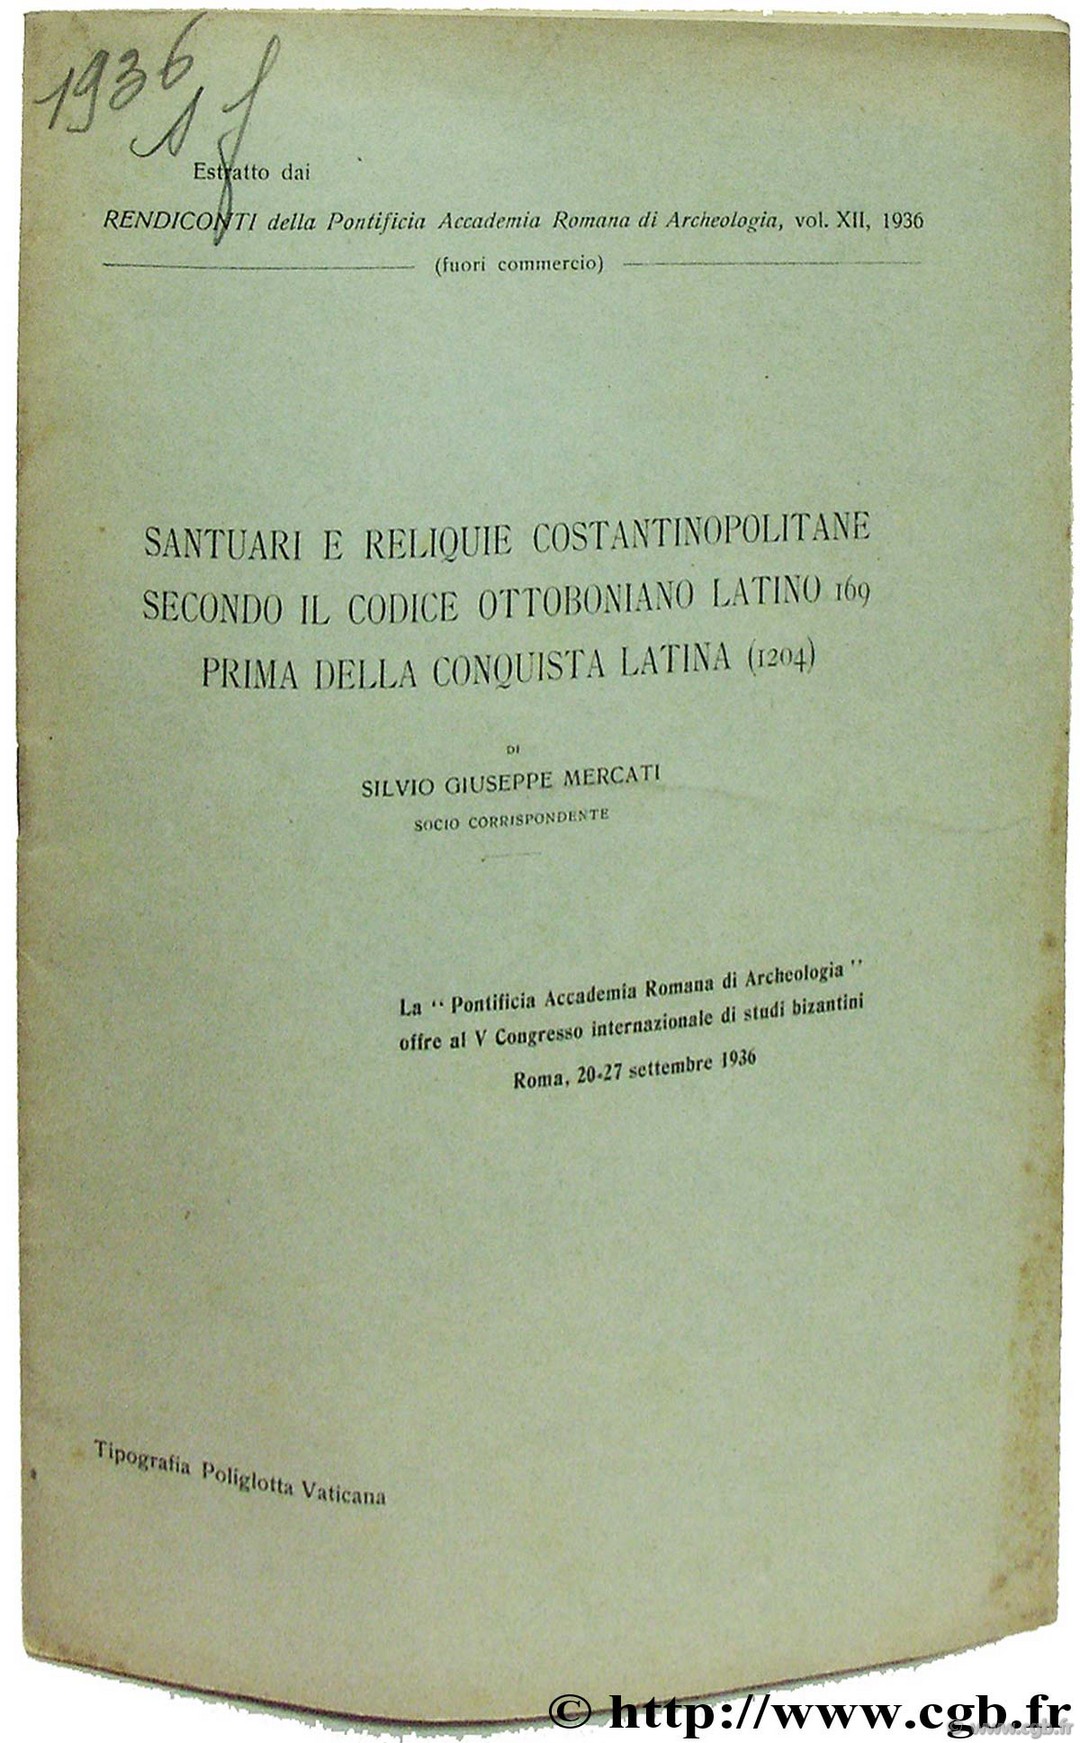 Santuari e relique costantinopolitane secondo il condice ottoboniano latino (169) prima della conquista latina (1204) MERCATI S.-G. 